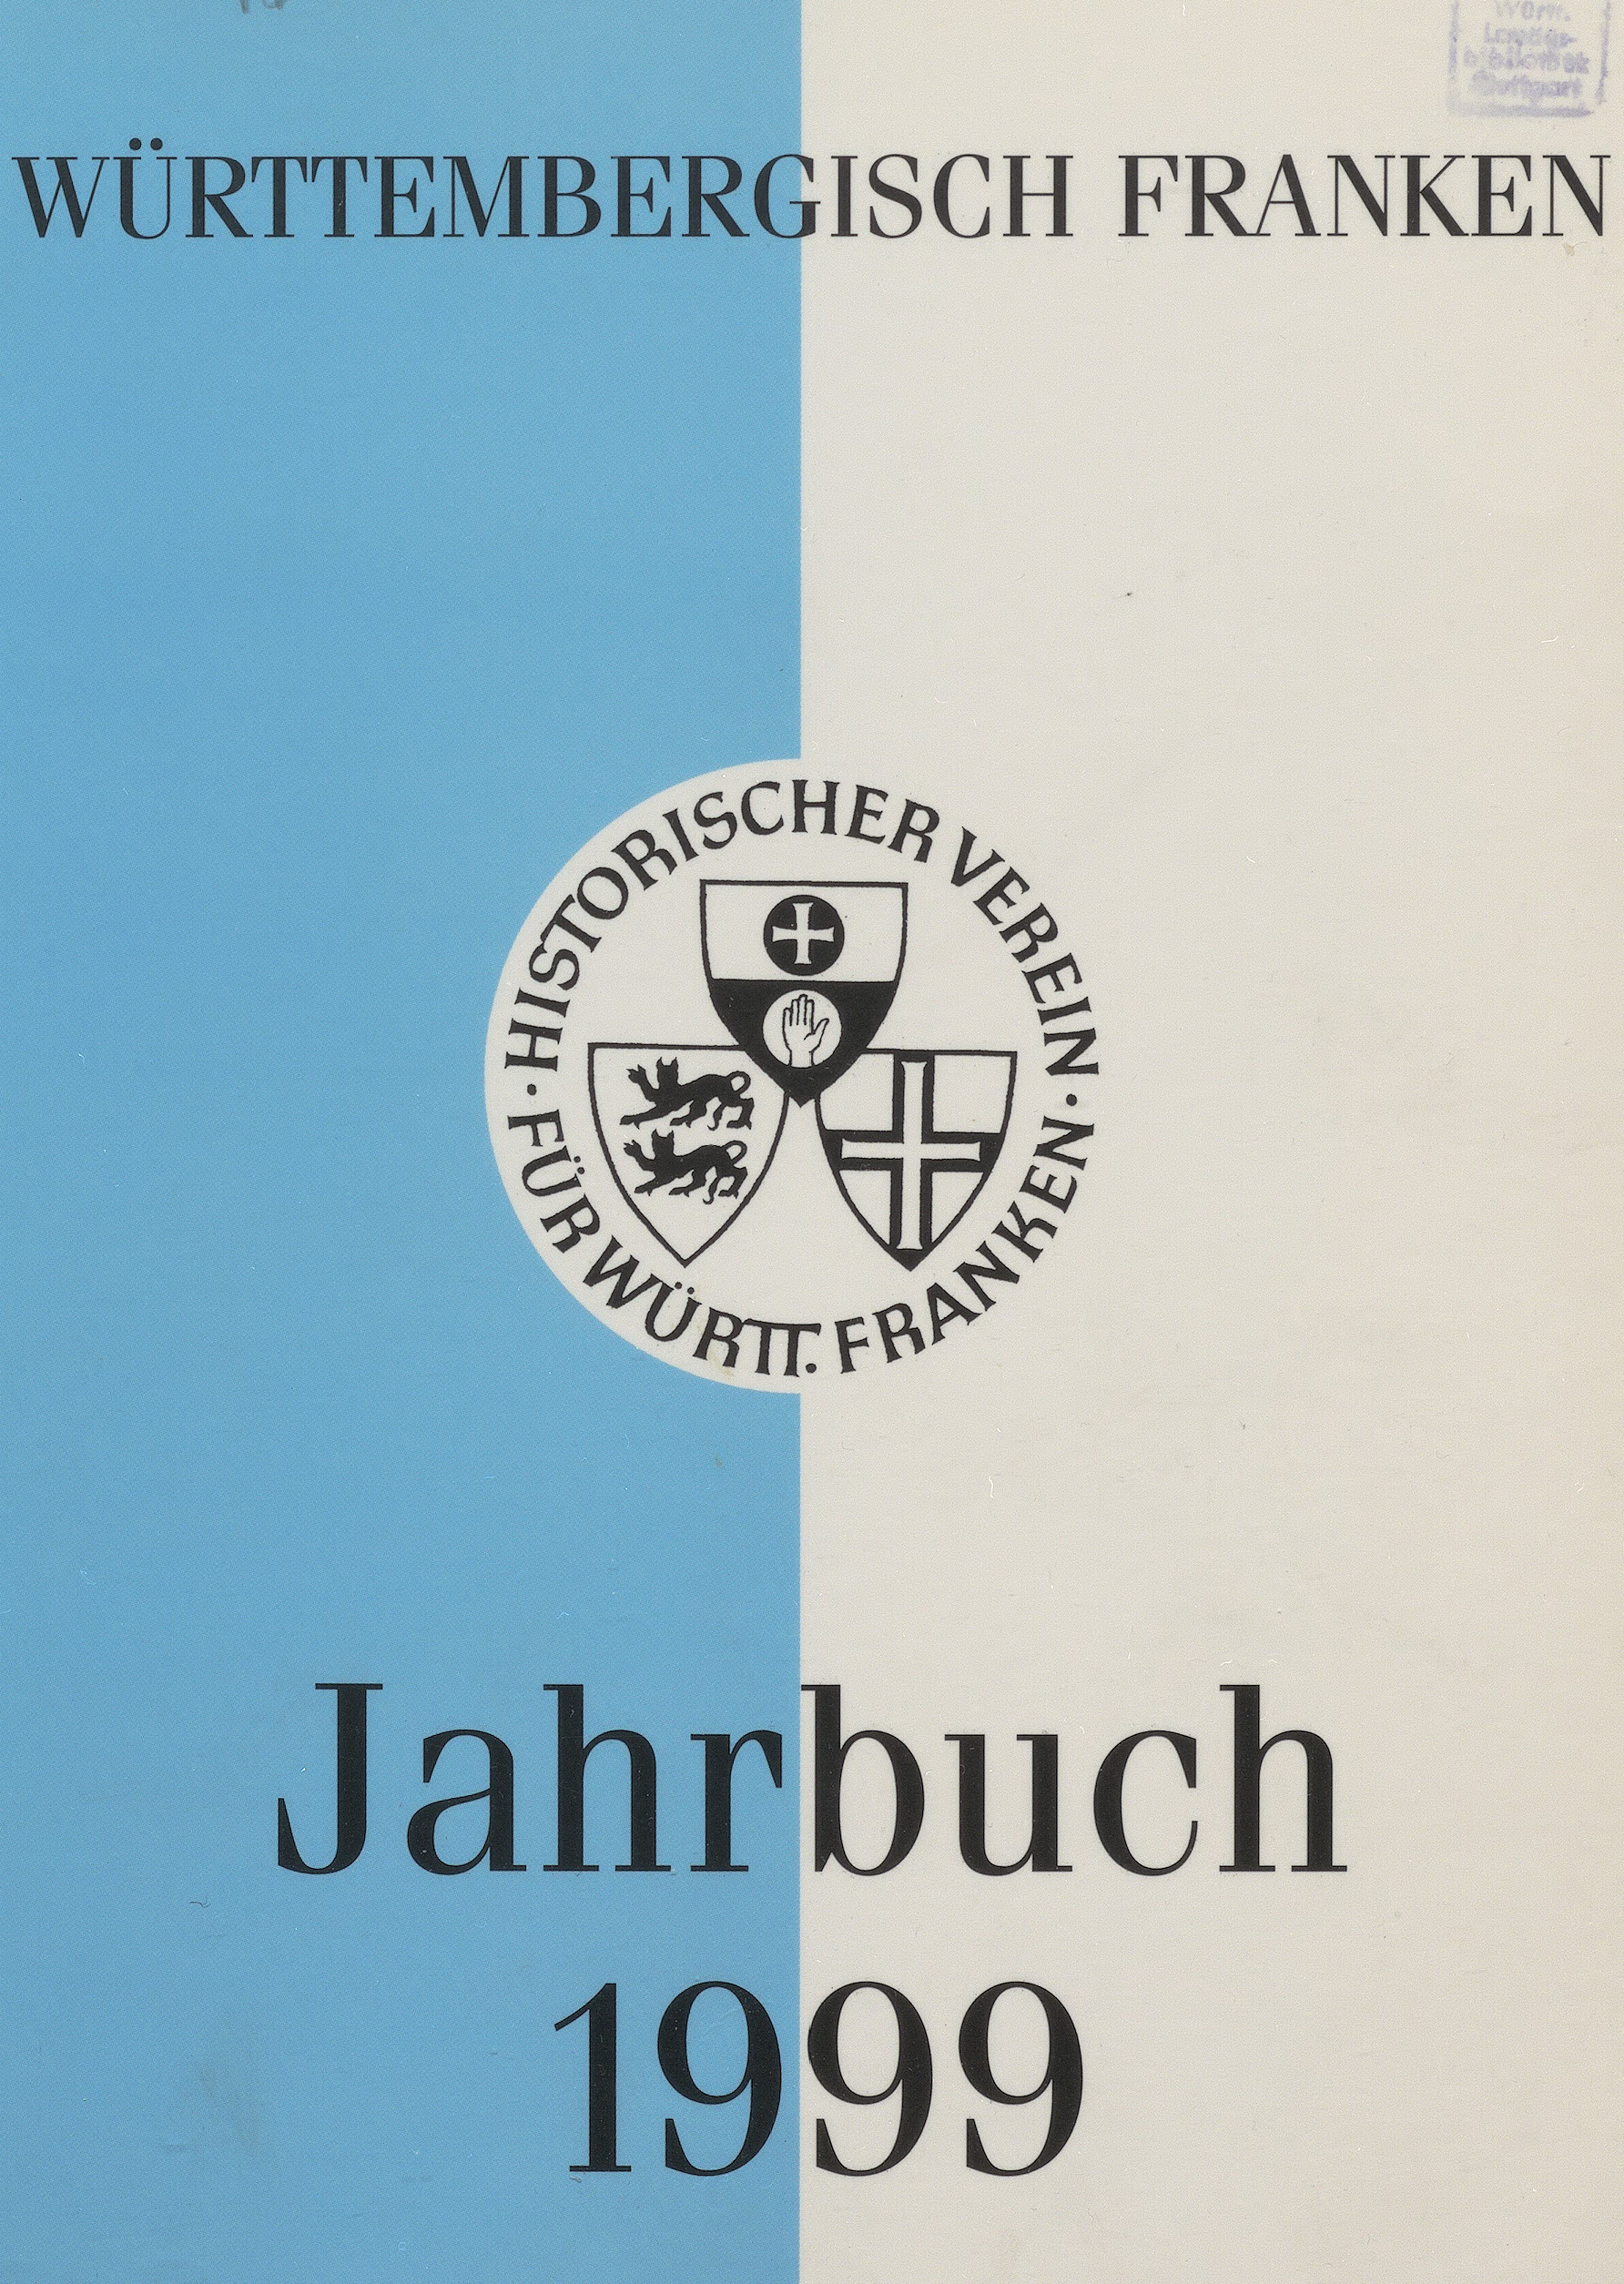                     Ansehen Bd. 83 (1999): Württembergisch Franken
                